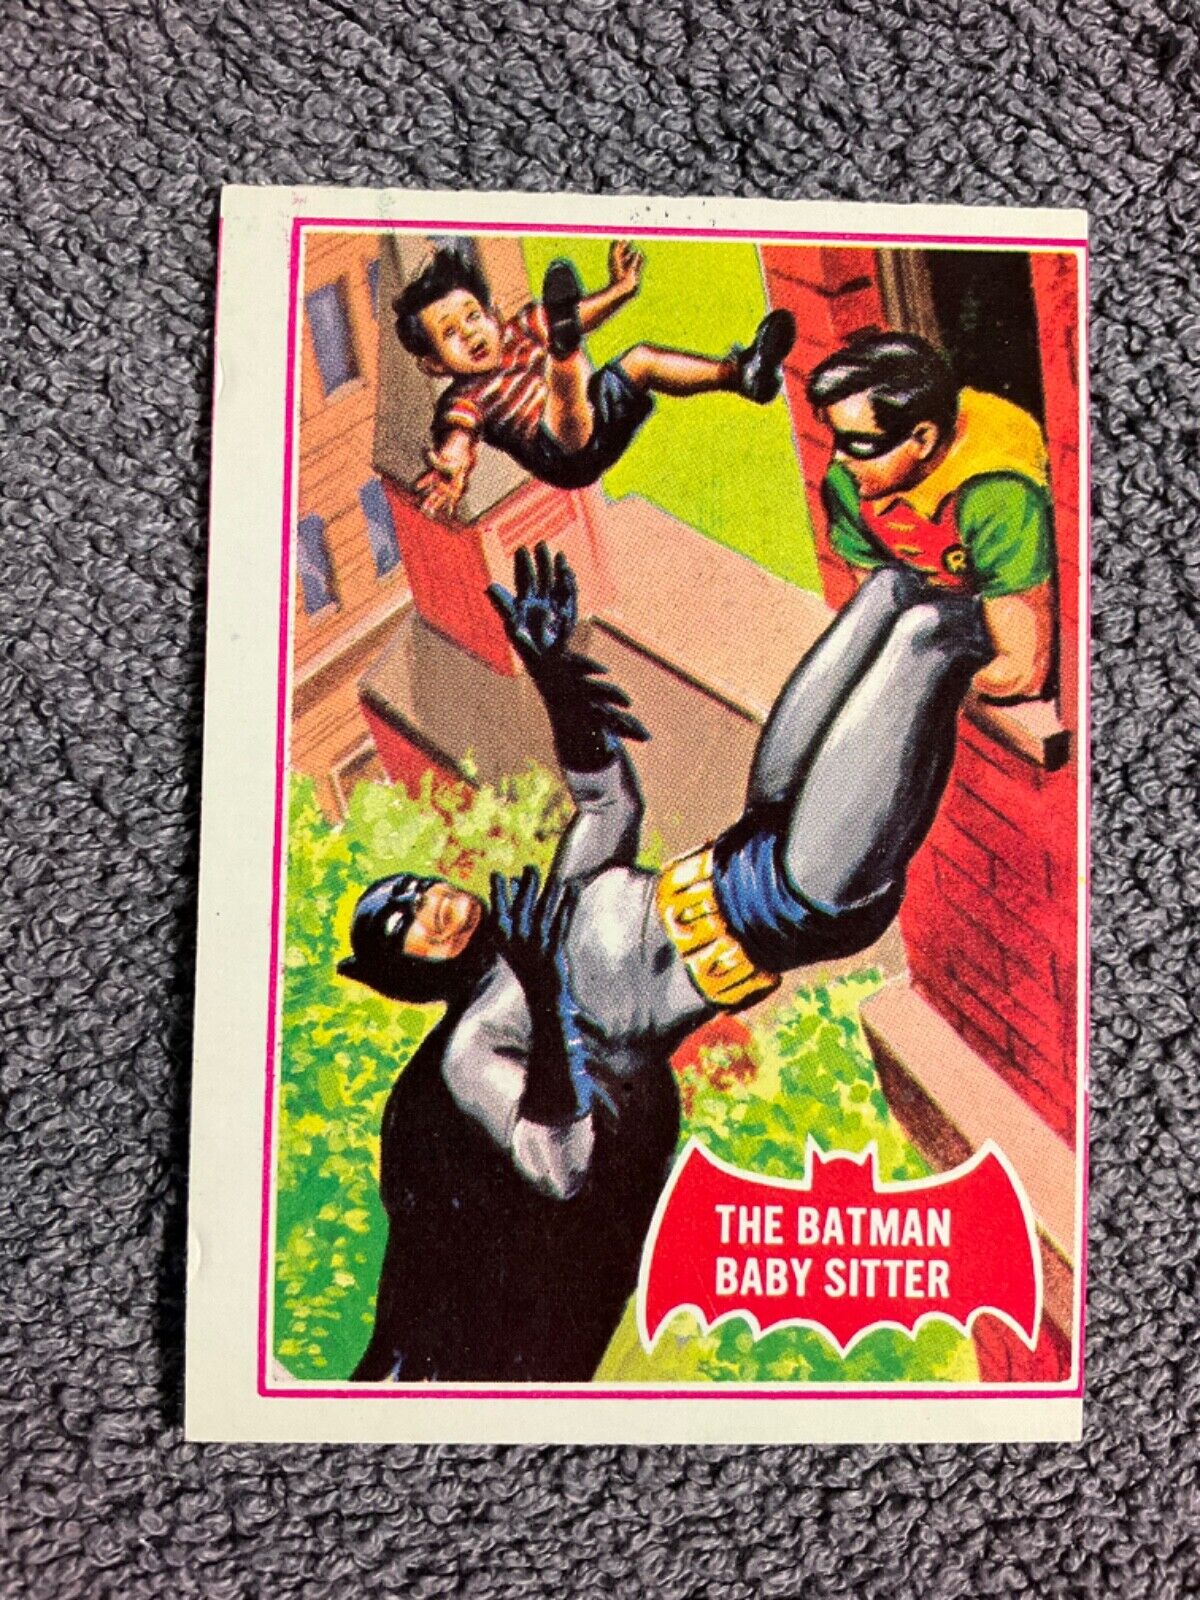 1966 Topps Batman Red Bat 34a Card The Batman Baby Sitter